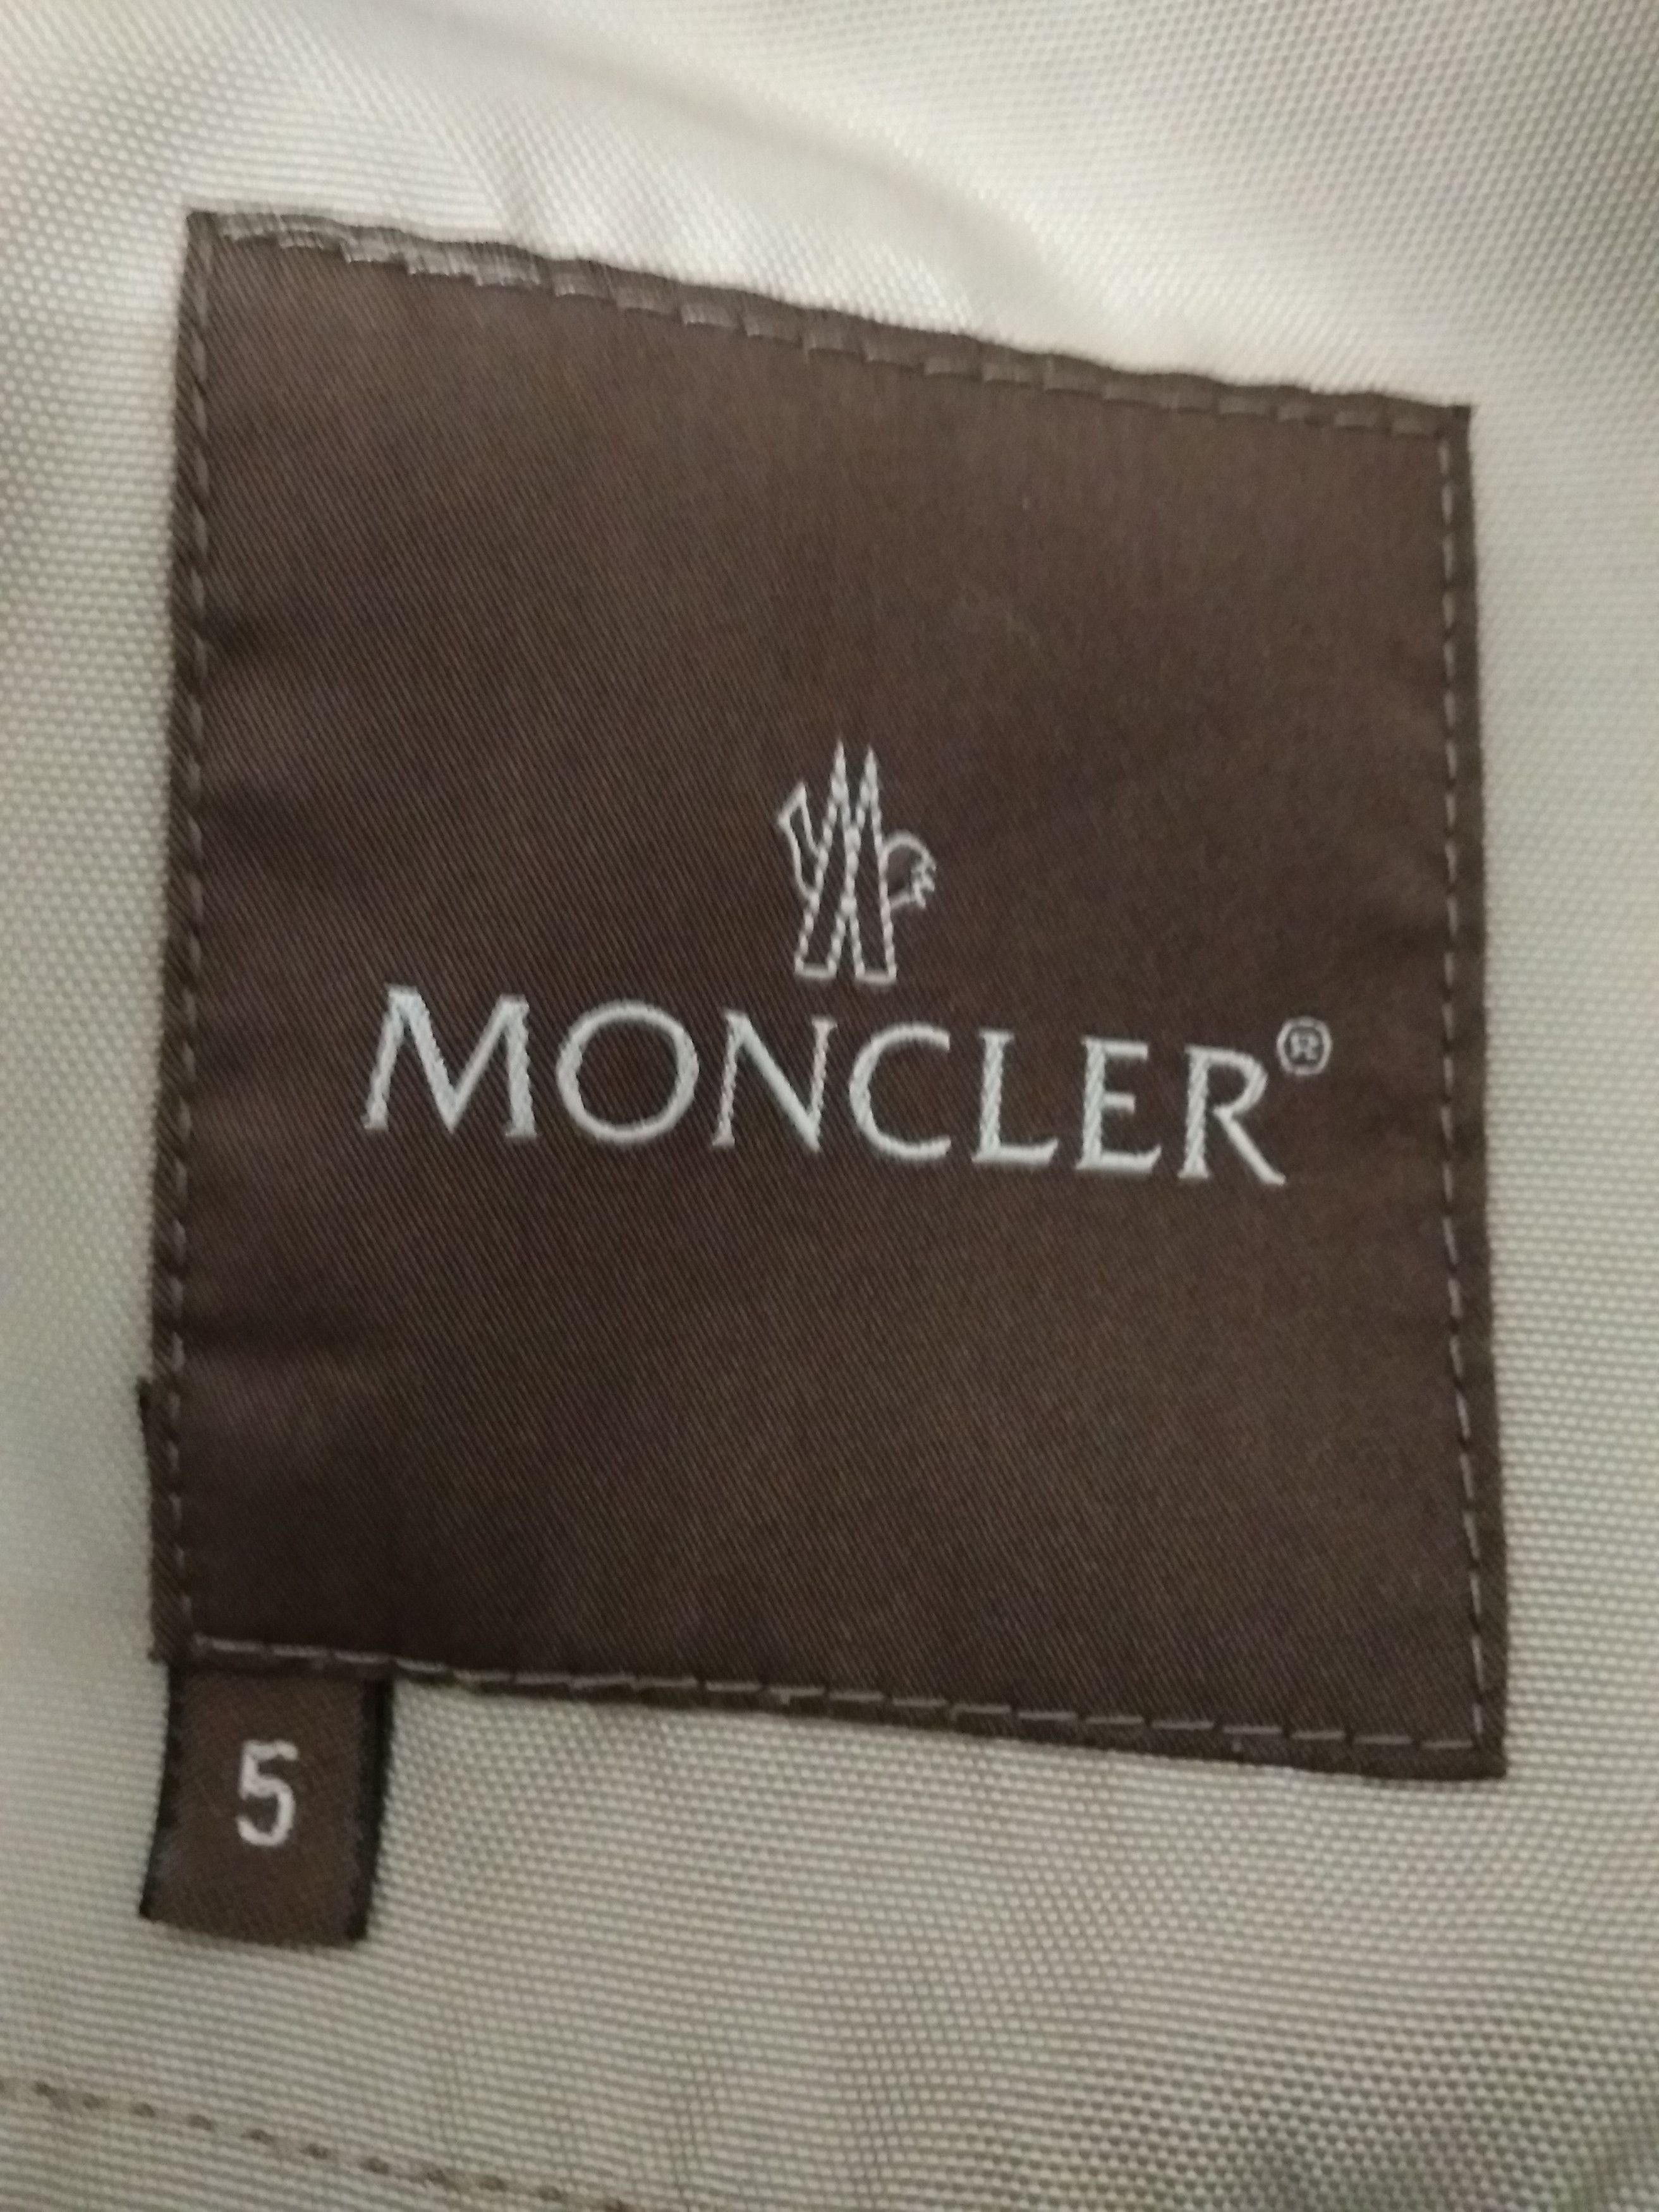 Moncler MONCLER RARE WOMAN Vintage Light Jackets Size M / US 6-8 / IT 42-44 - 6 Thumbnail